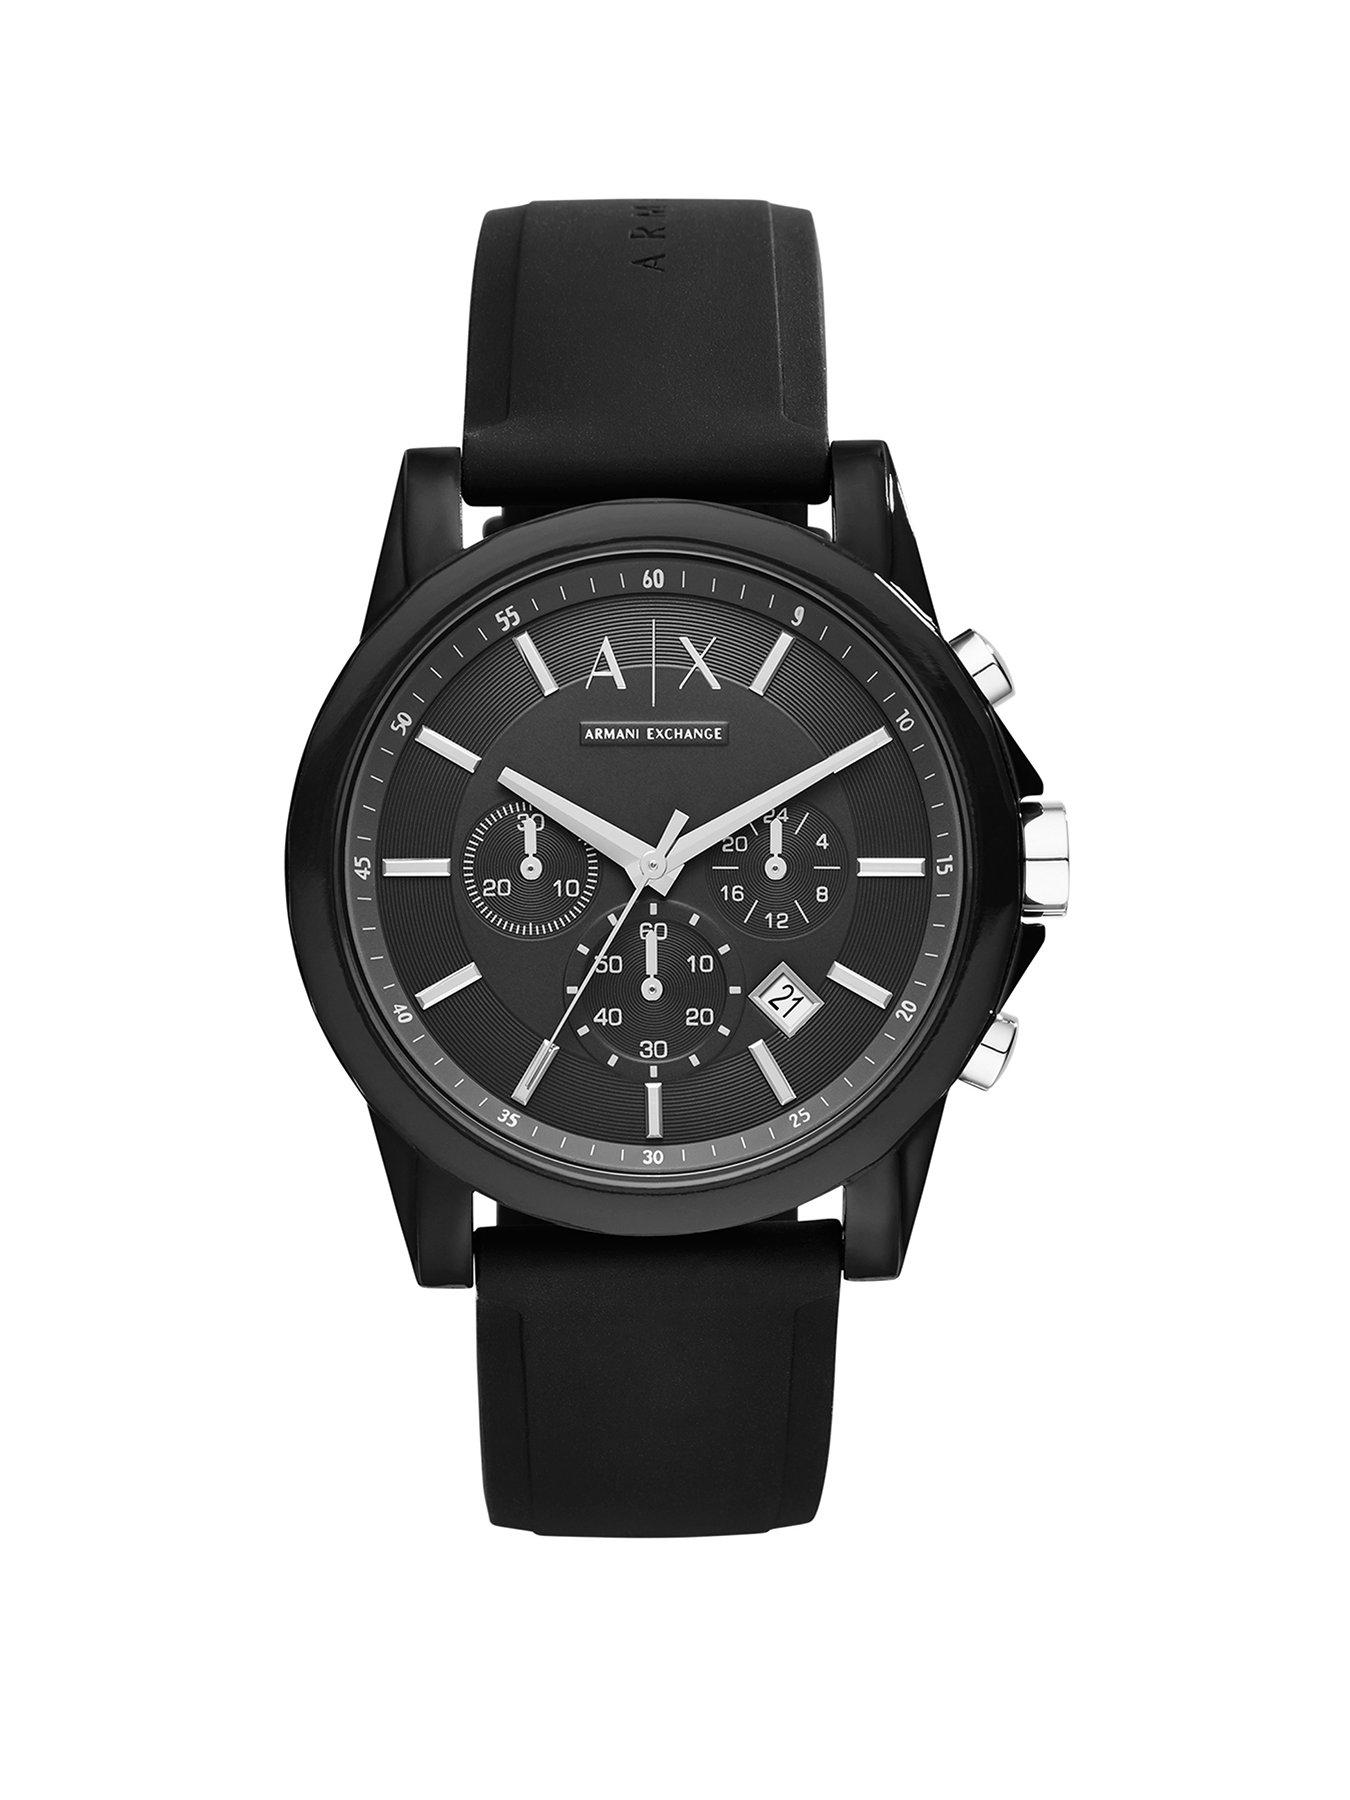 Buy Armani Exchange Analog Black Dial Men's Watch-AX2164 at